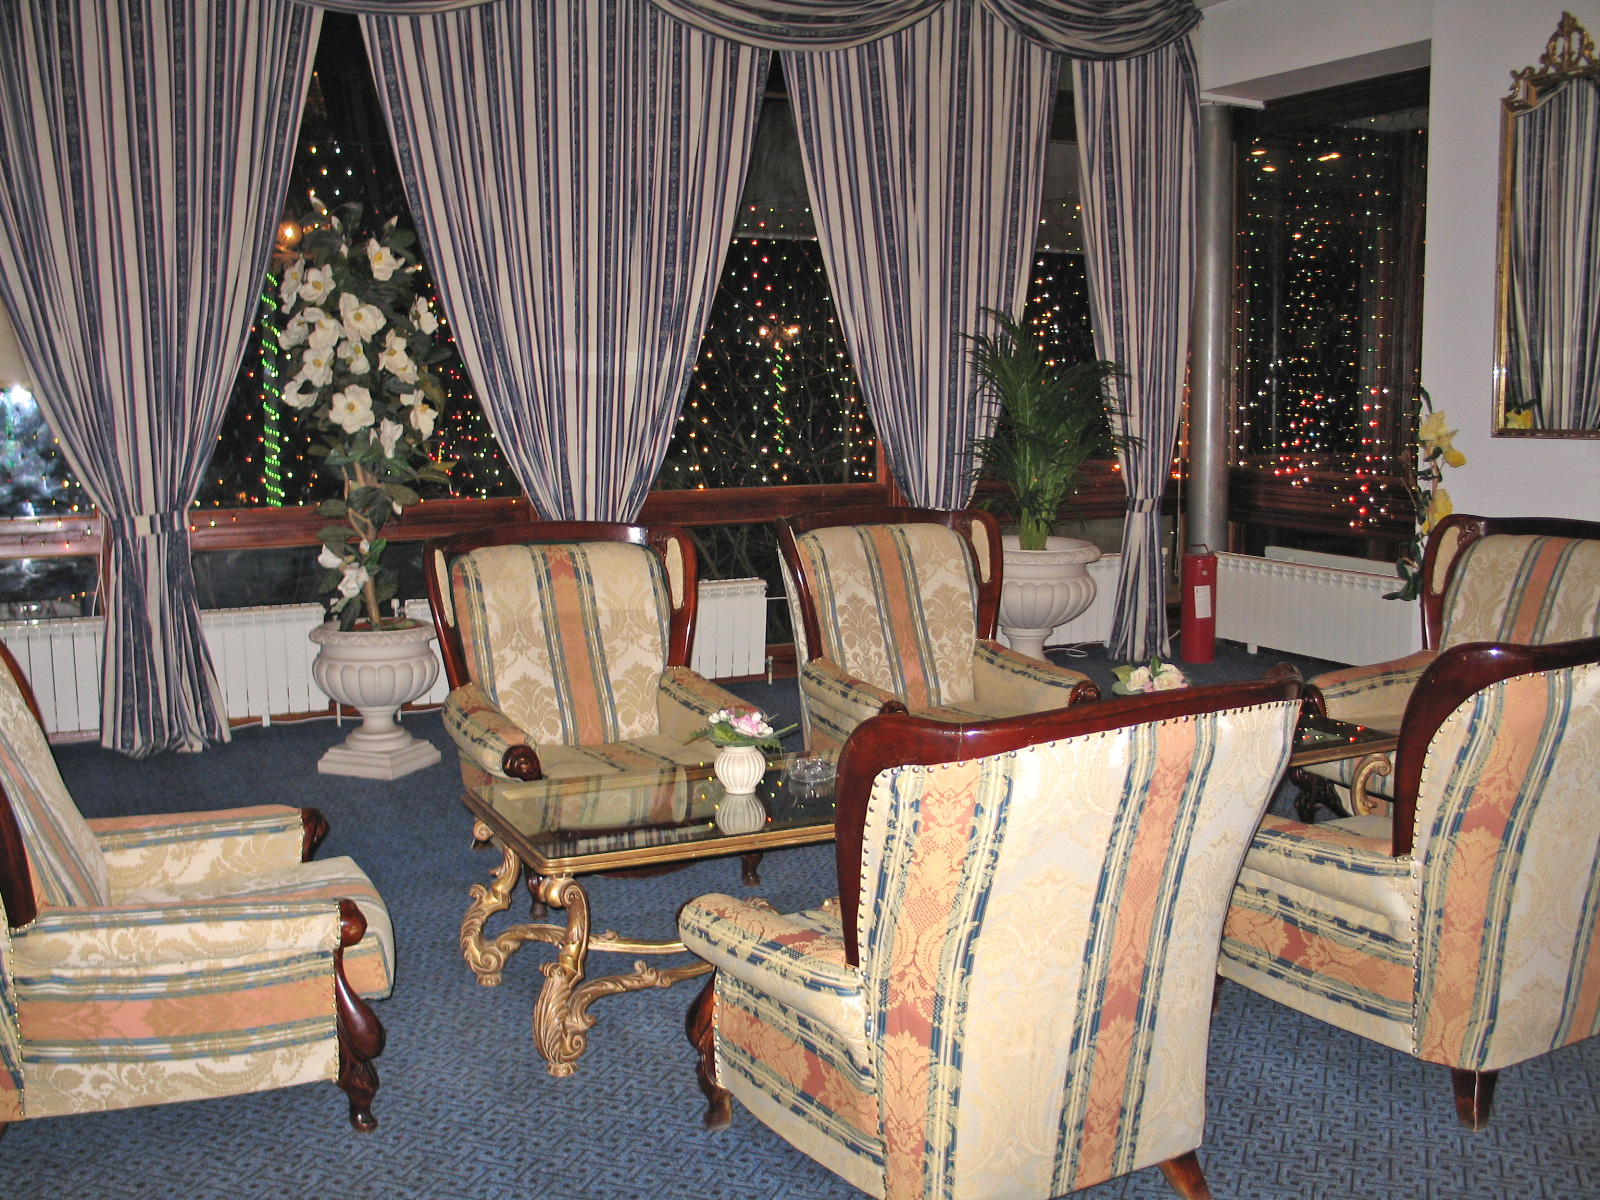 Hotel lounge in Turkey